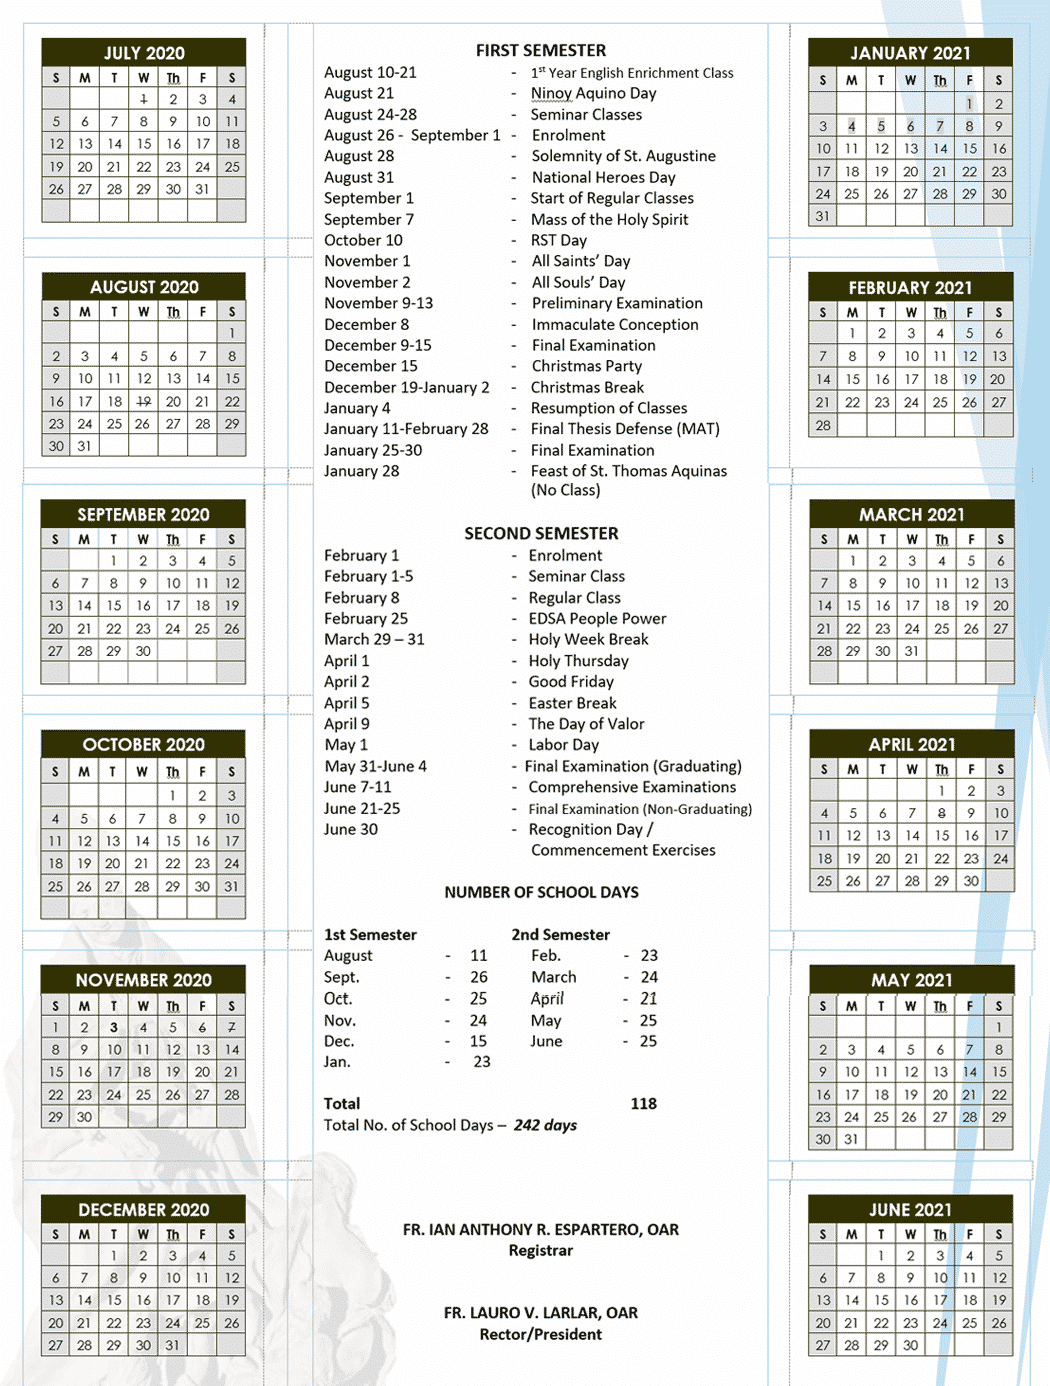 School Calendar - Recoletos School Of Theology-School Calendar 2021 To 2022 Philippines